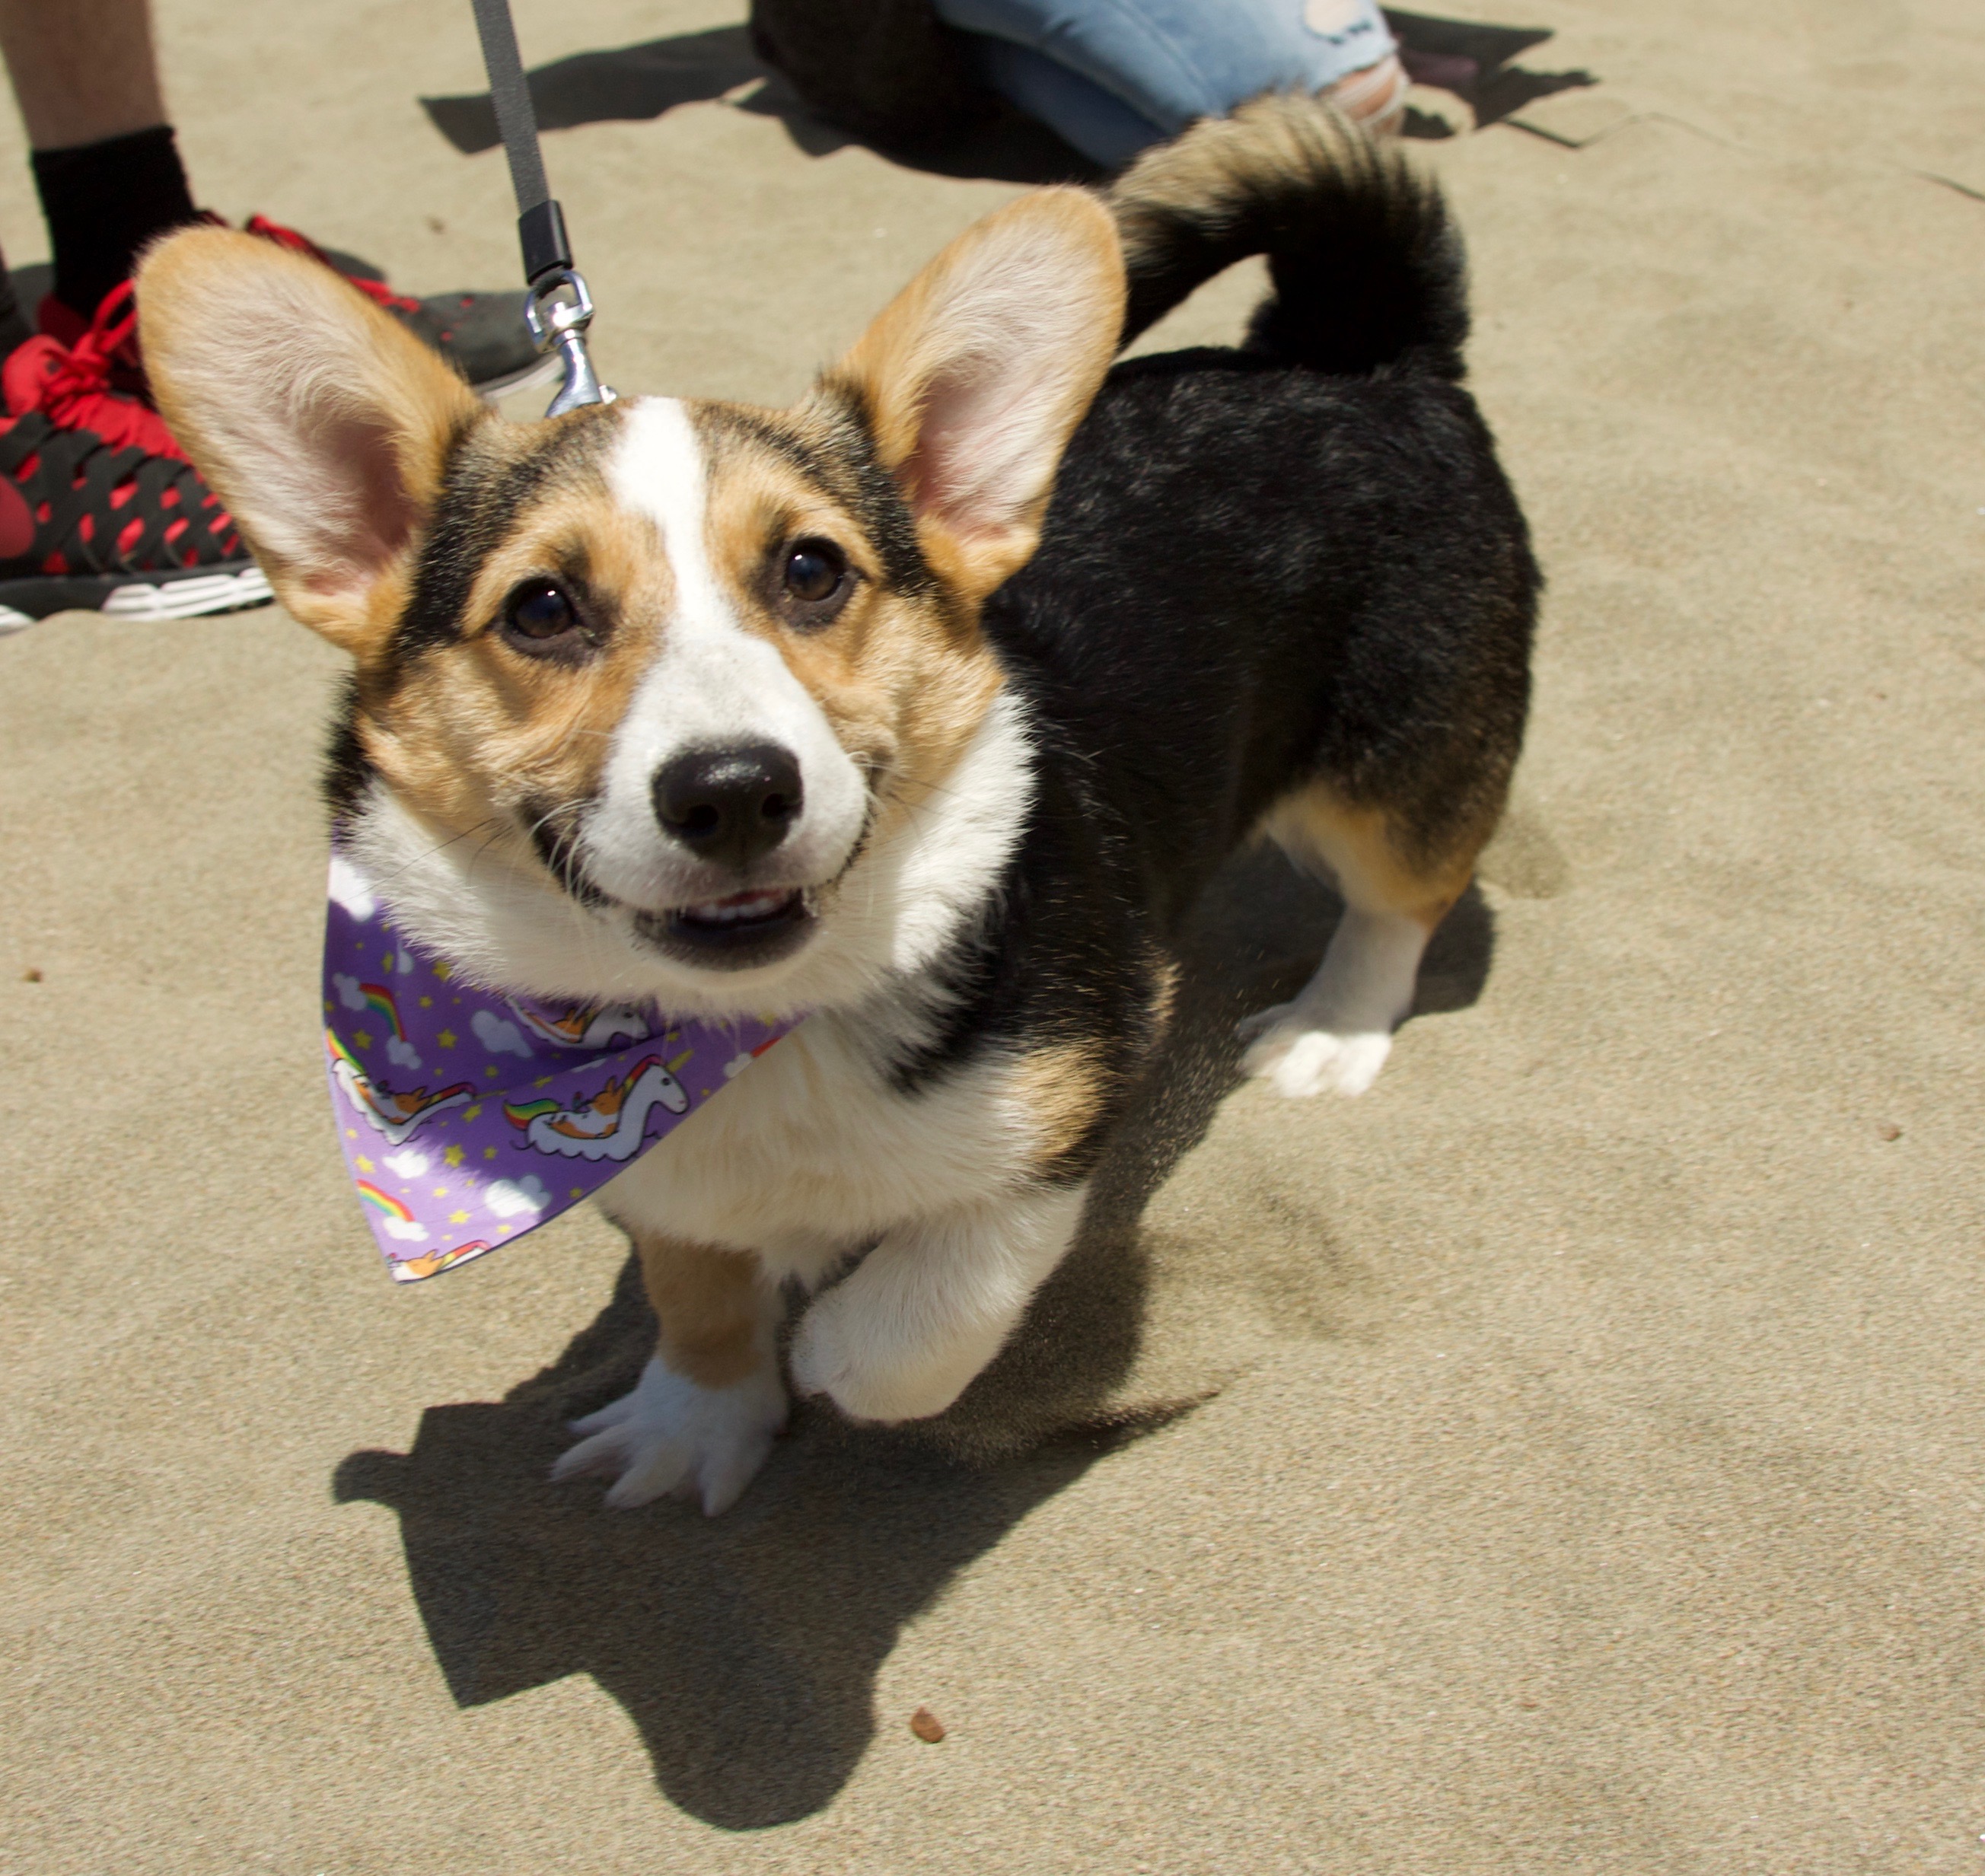 Dog of the Day: CorgiCon Corgi | The Dogs of San Francisco